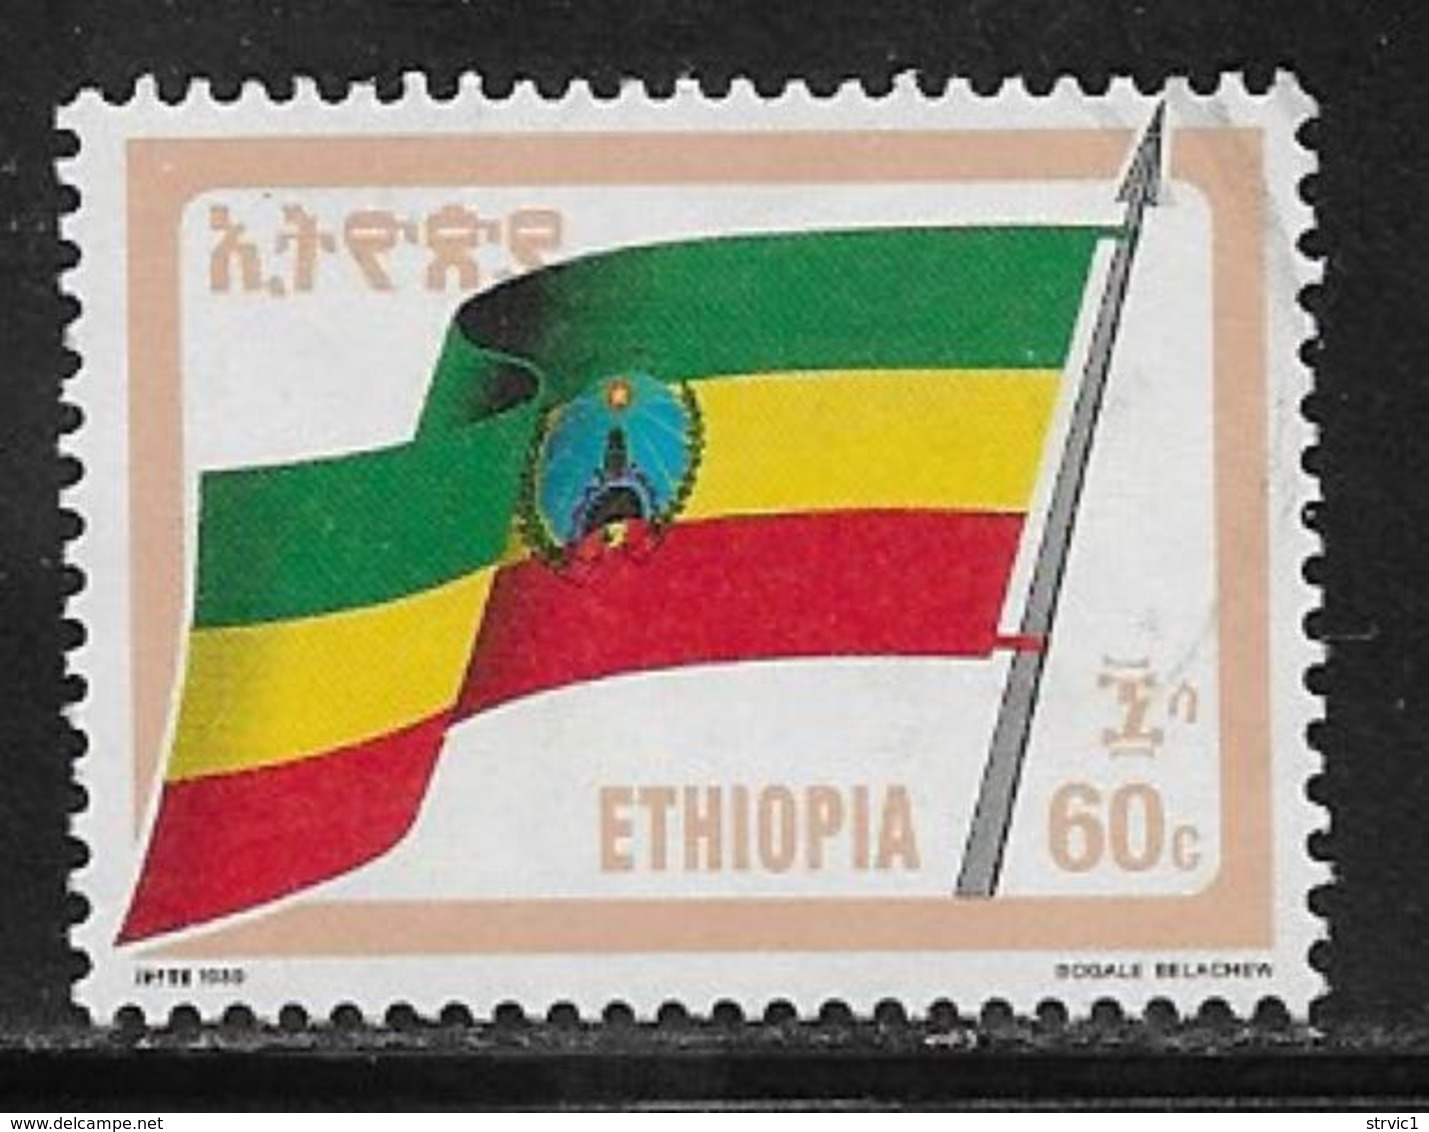 Ethiopia Scott # 1290 Used Flag, 1990 - Ethiopia